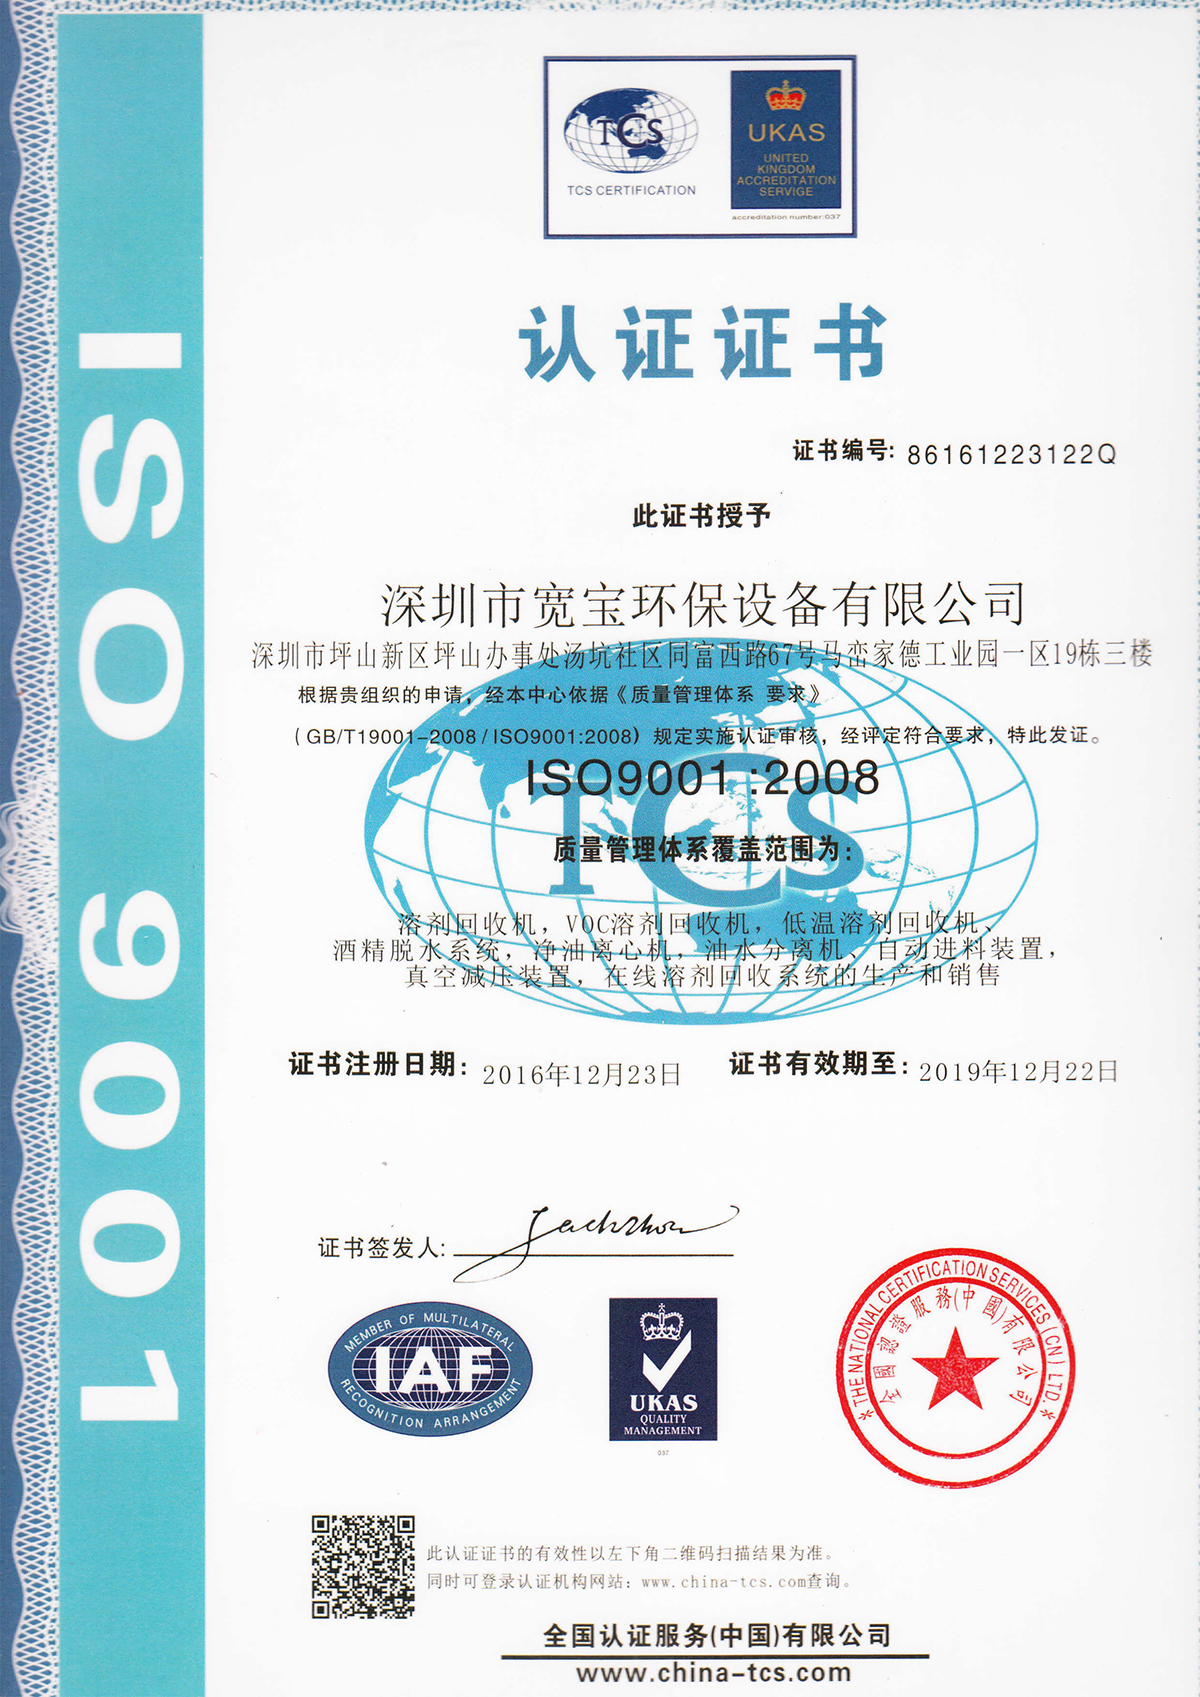 寬寶獲得質量管理體系ISO9001認證